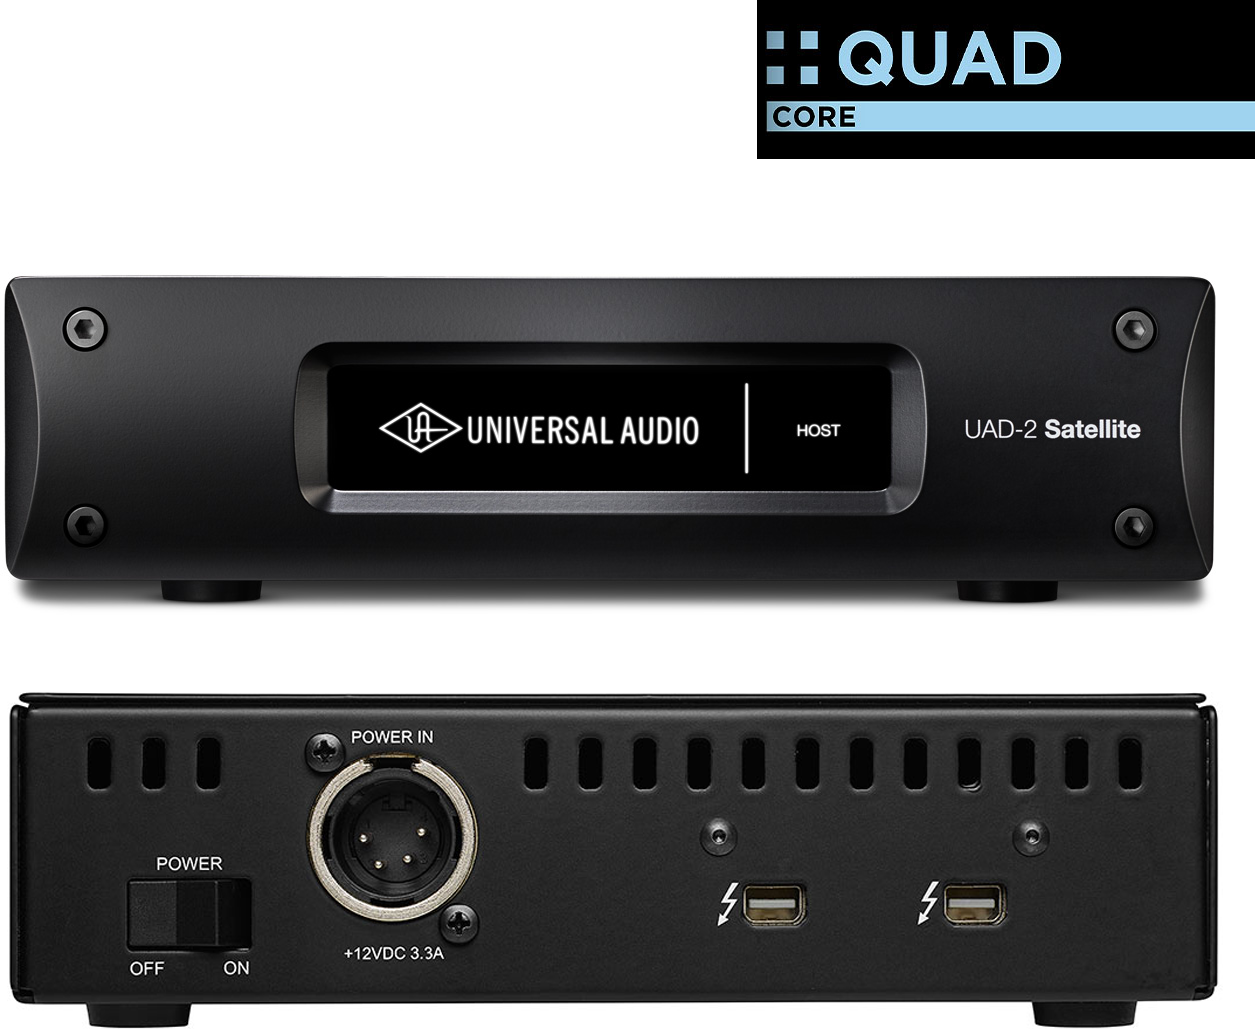 Universal Audio Uad-2 Satellite Thunderbolt Quad Core - Thunderbolt audio-interface - Main picture